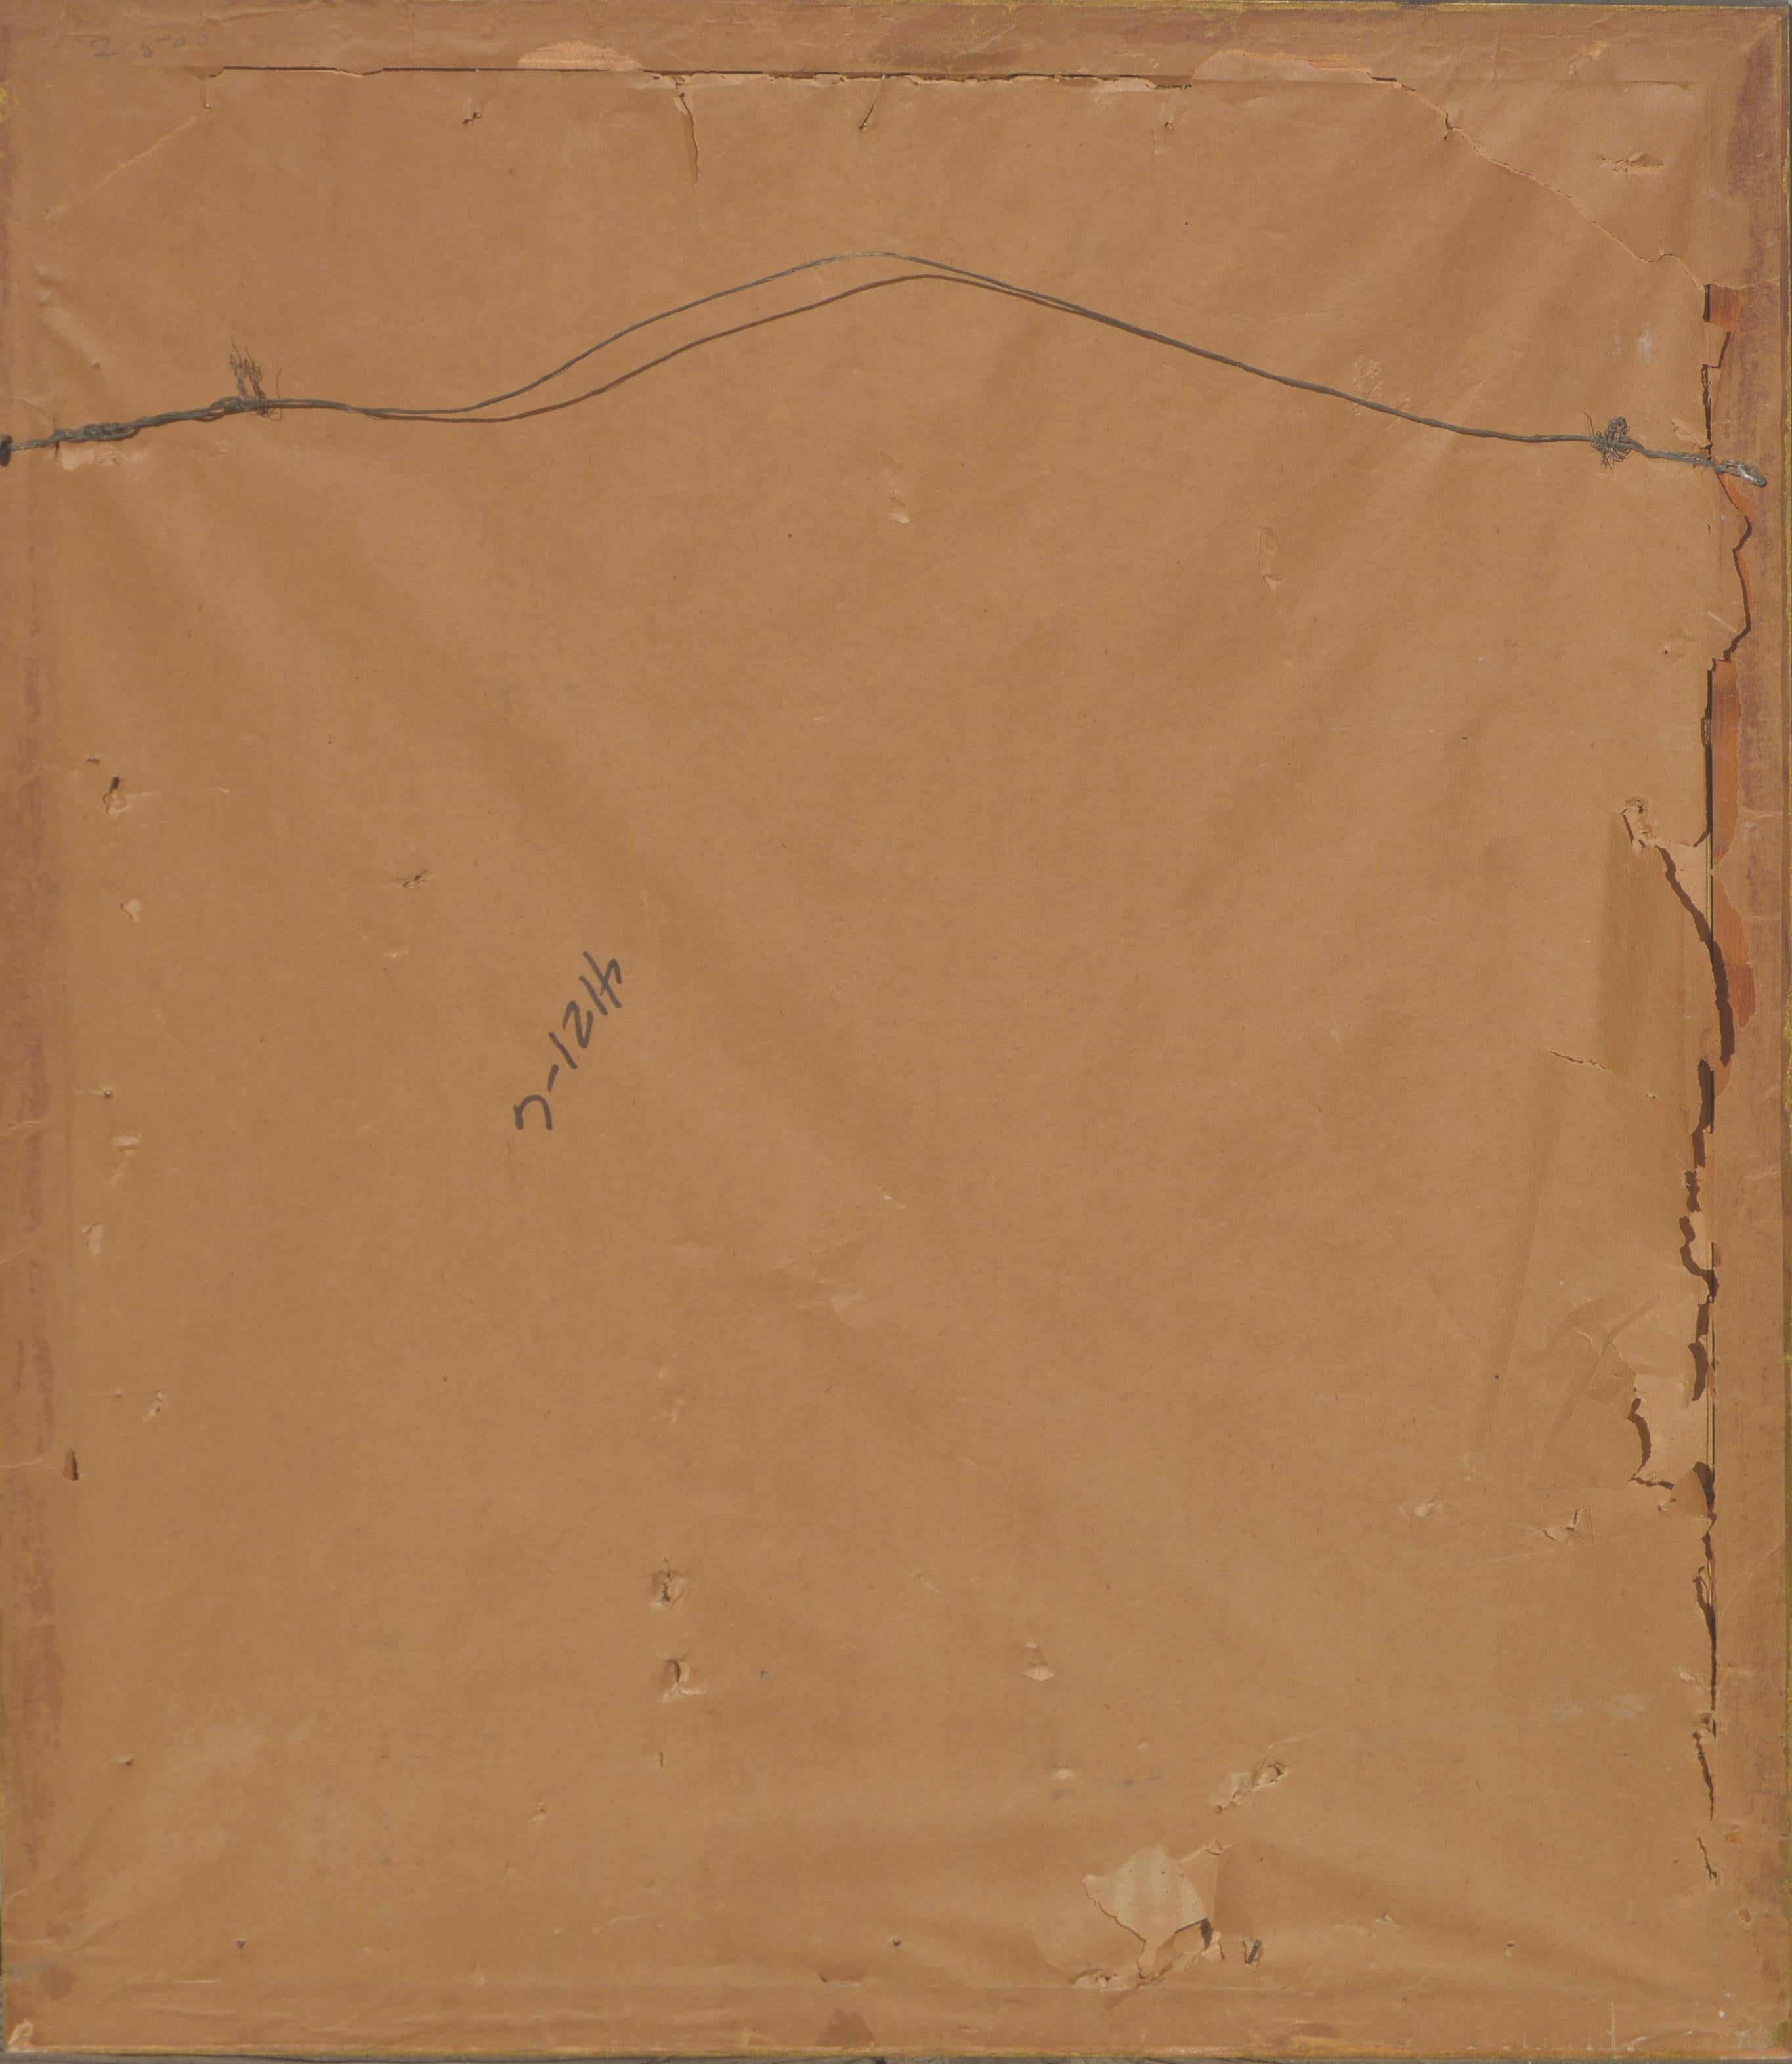 Schön  Pastellstillleben aus den 1940er Jahren mit Apfelblüten in einer rosa Affenvase von Eugenie May Pack Stiffler (Amerikanerin, 1870-1959). Signiert in der linken unteren Ecke; Titel am rechten unteren Rand. Präsentiert unter Glas in einem